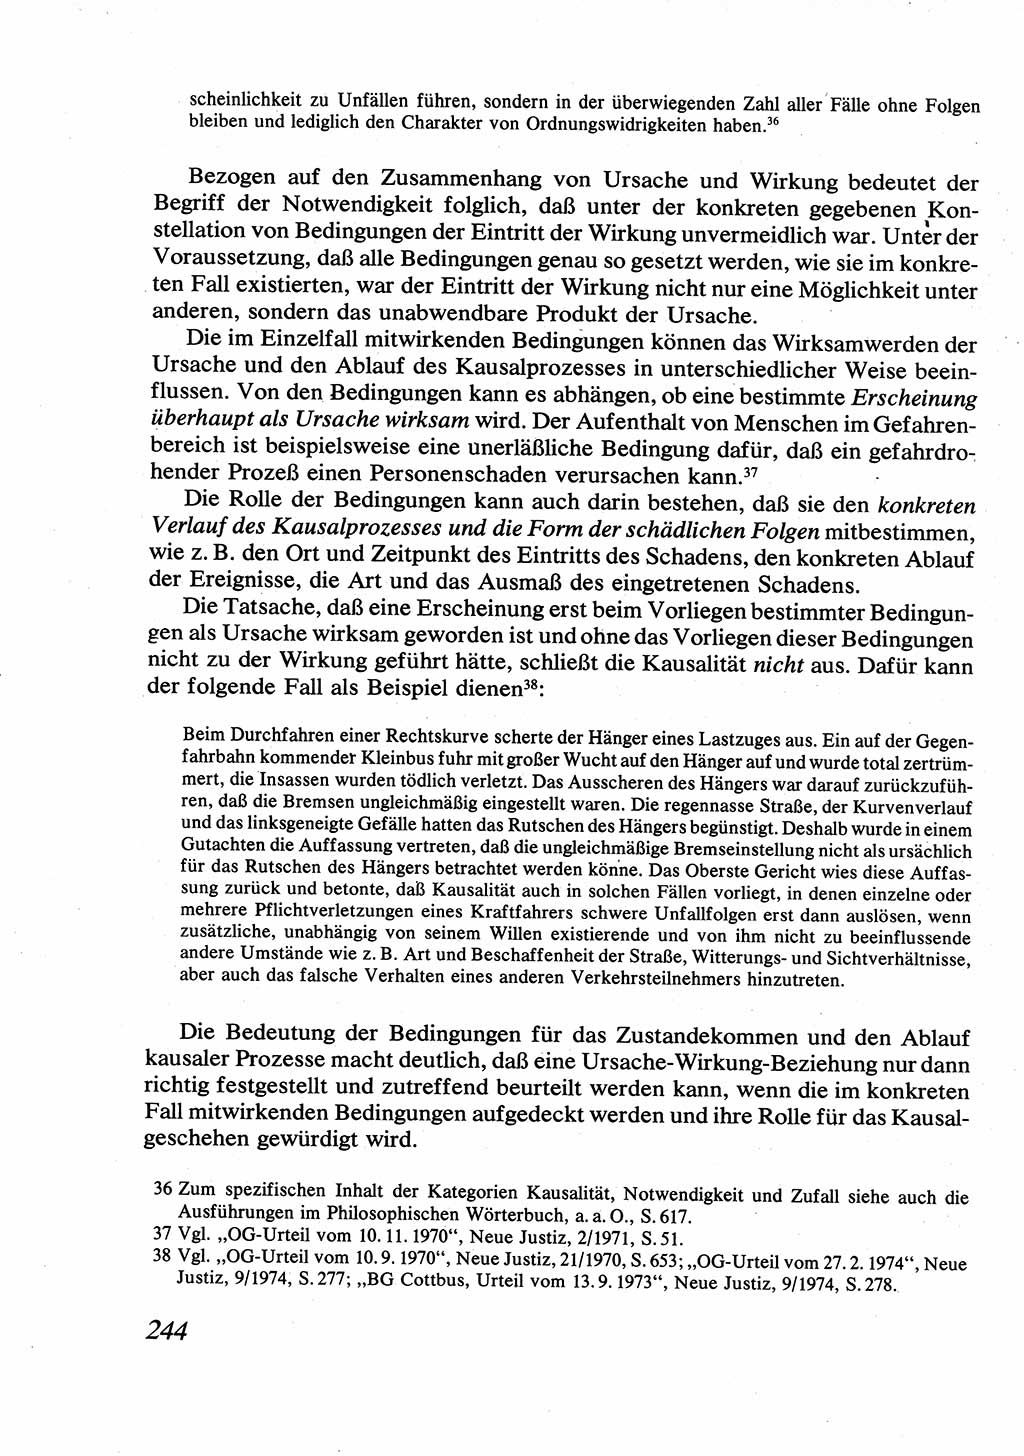 Strafrecht [Deutsche Demokratische Republik (DDR)], Allgemeiner Teil, Lehrbuch 1976, Seite 244 (Strafr. DDR AT Lb. 1976, S. 244)